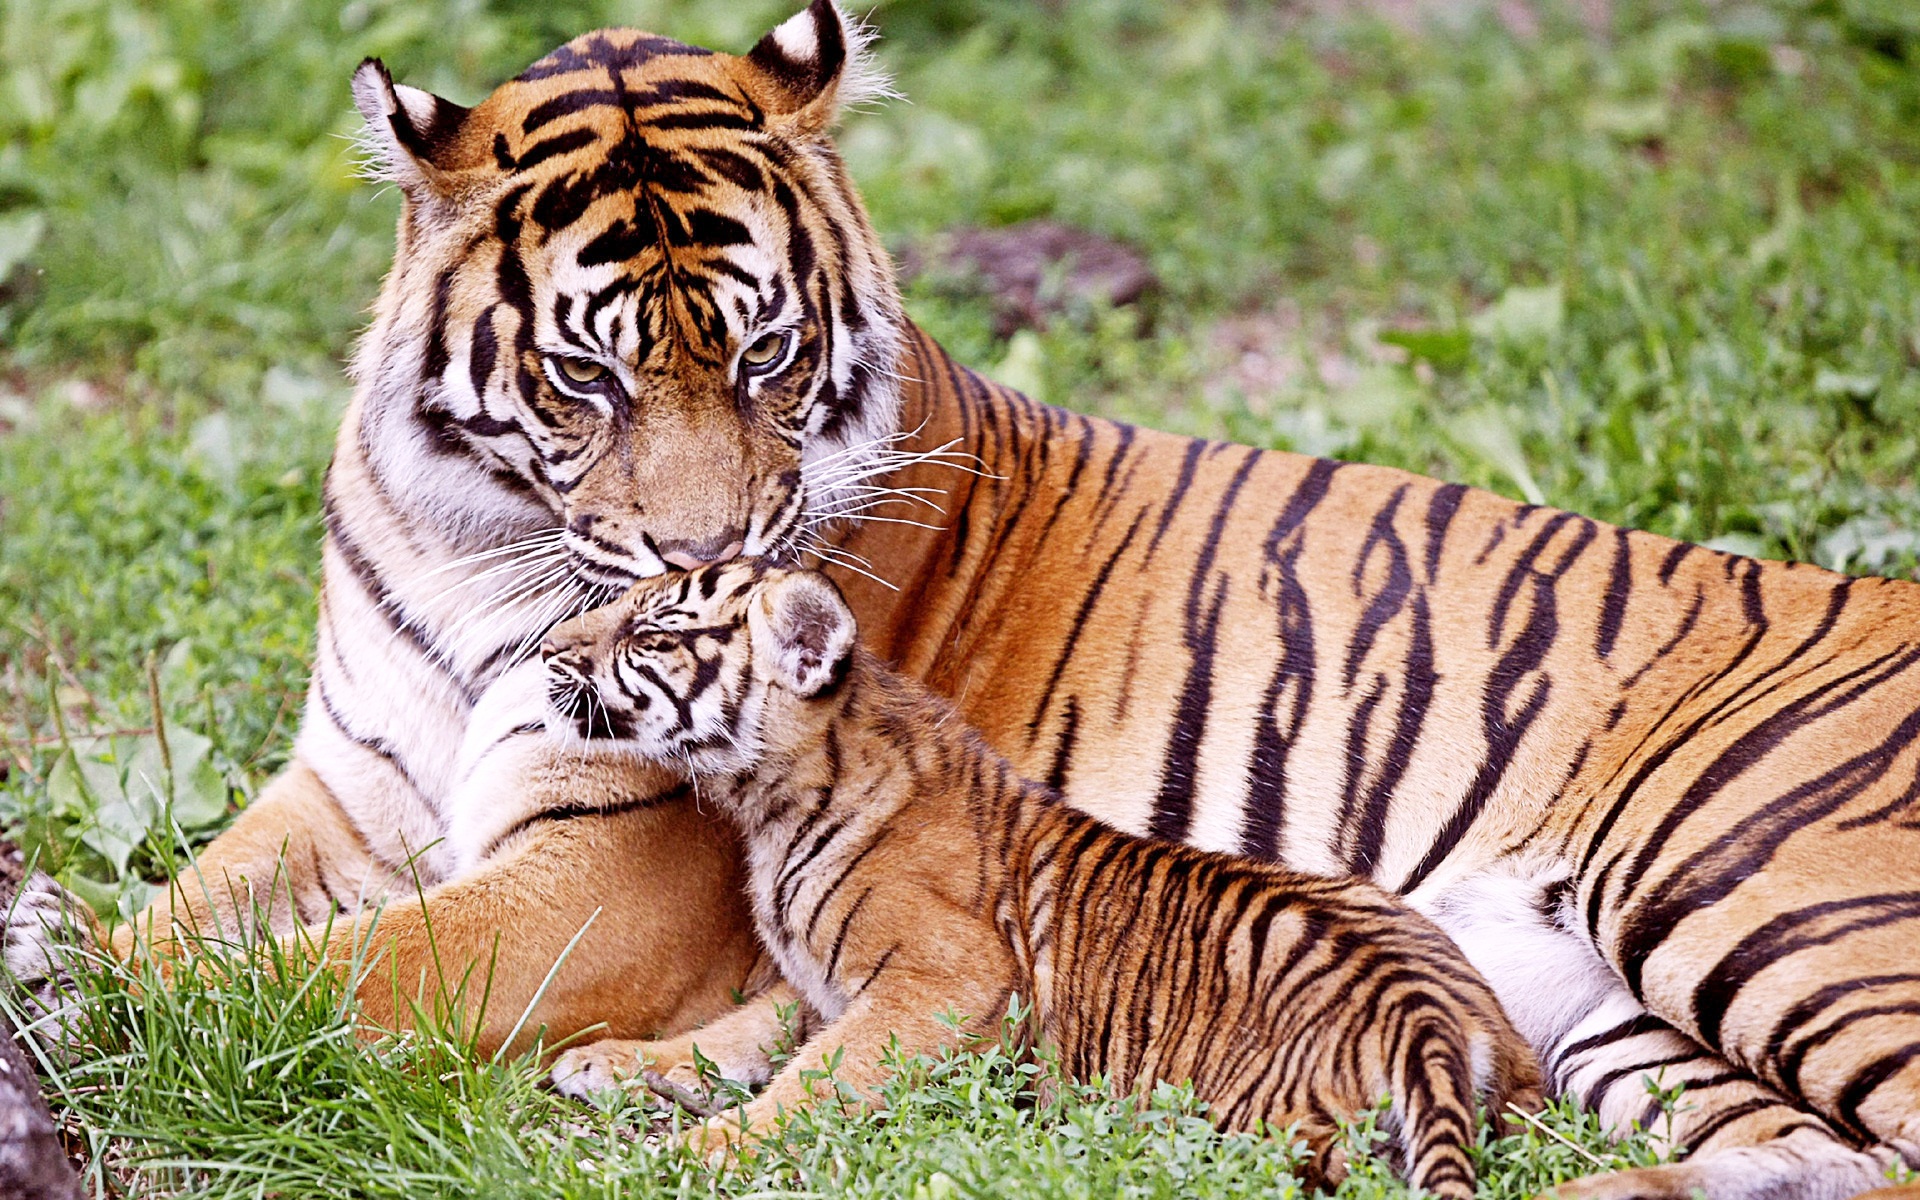 Tiger & Baby Tiger - Tiger And Baby Tiger - HD Wallpaper 